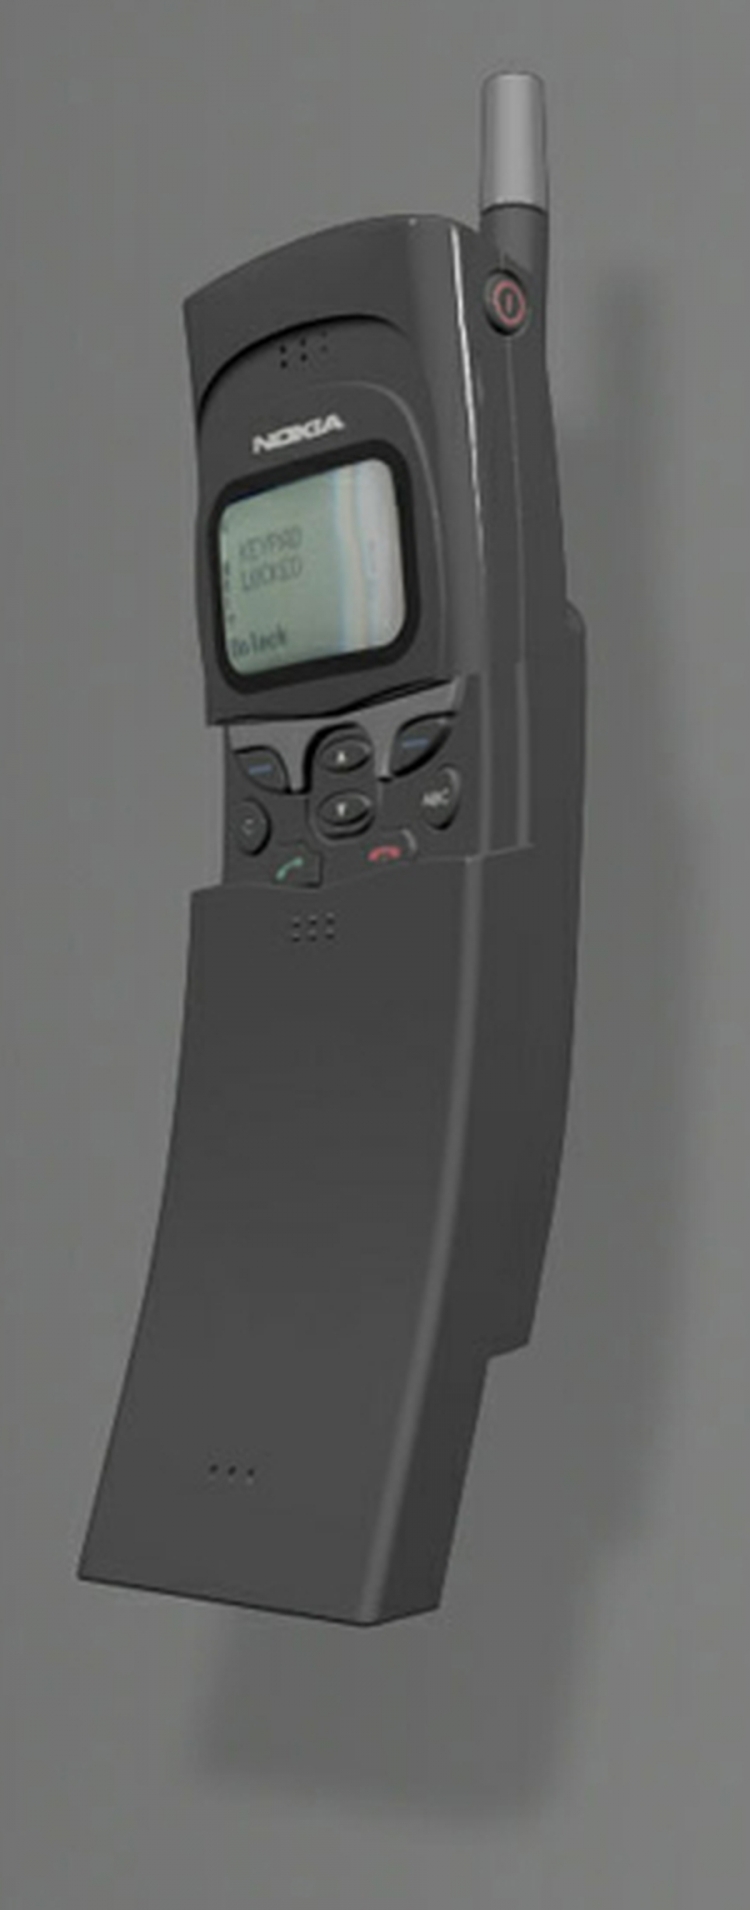 1996. godina - Nokia 8110 / Zbog svog izgleda bio poznat pod nadimkom "Banana", postao popularan zbog prvog nastavka filma "Matrix".